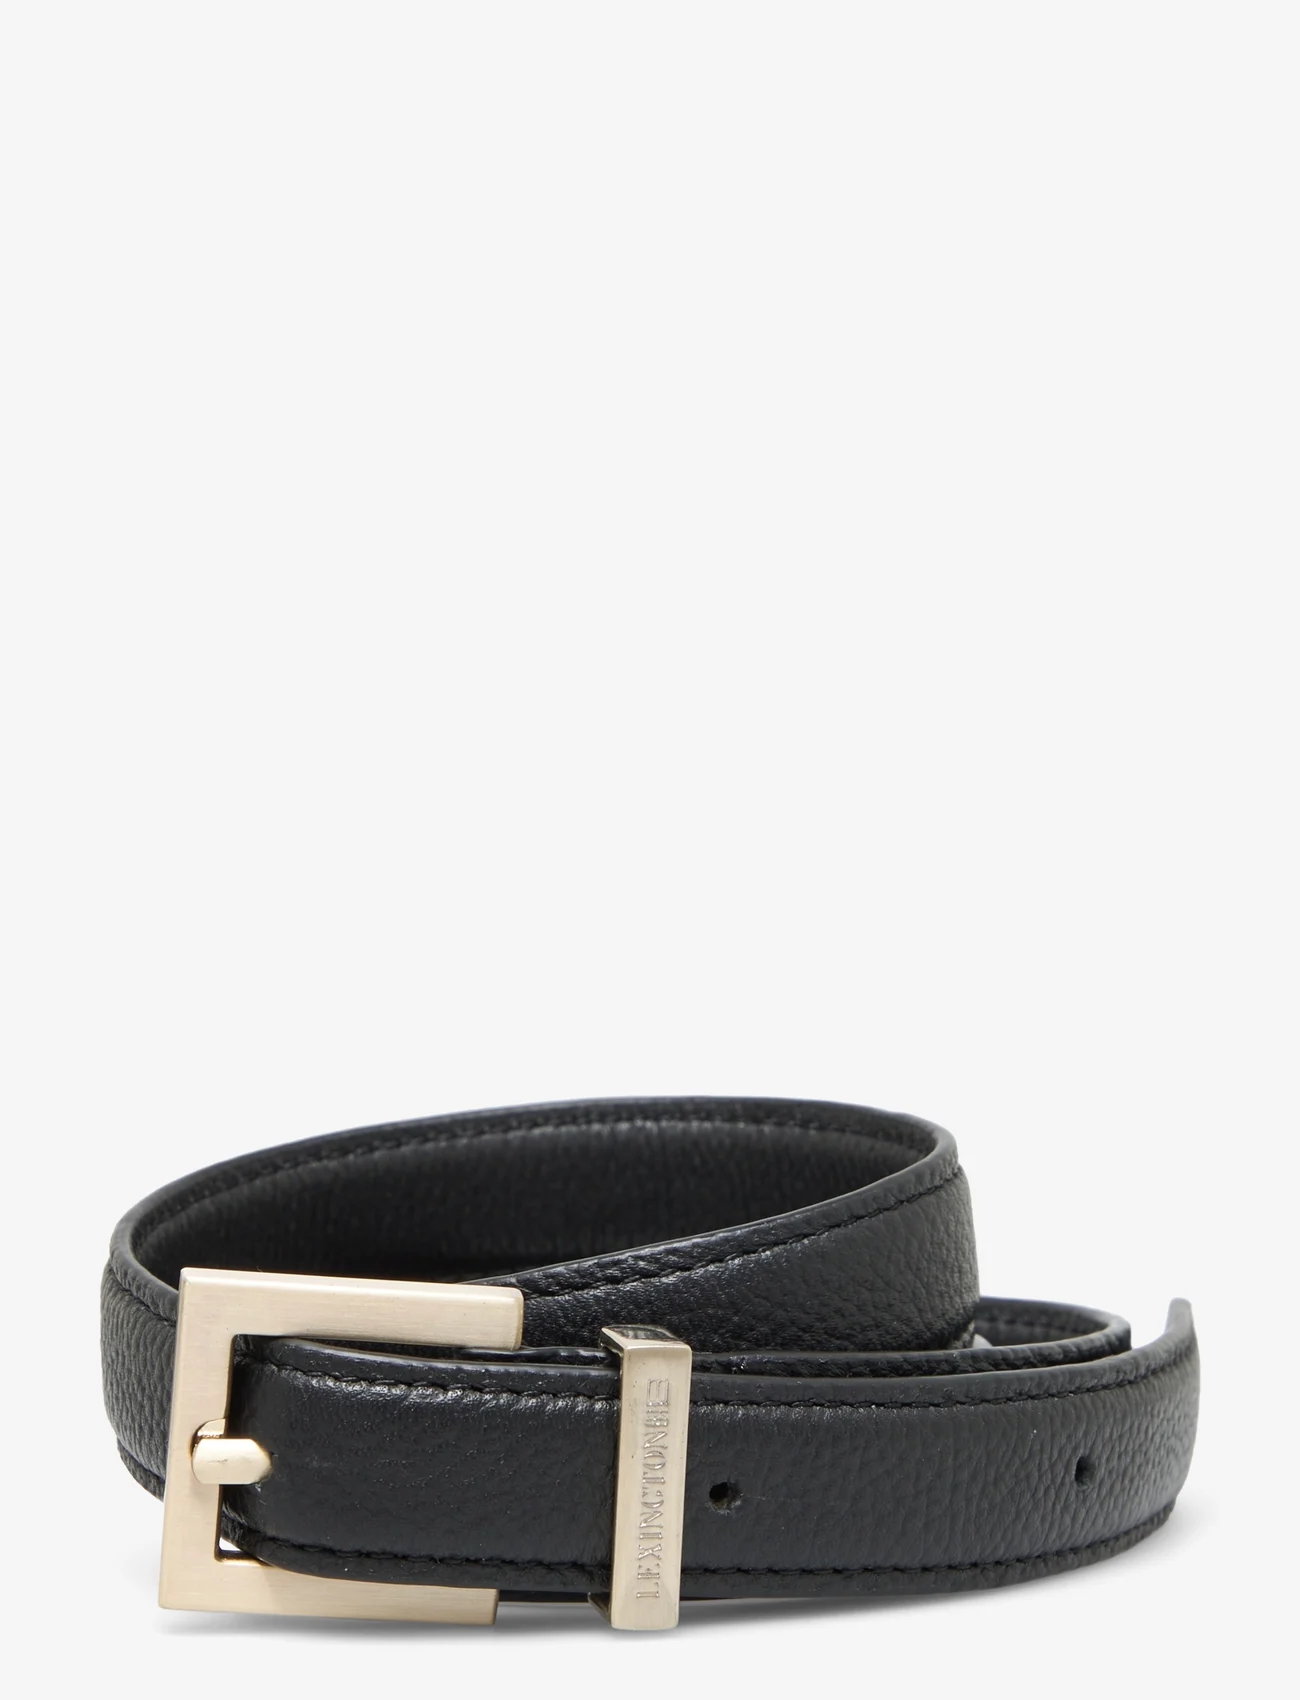 Lexington Clothing - Lexington Leather Belt - riemen - black - 0